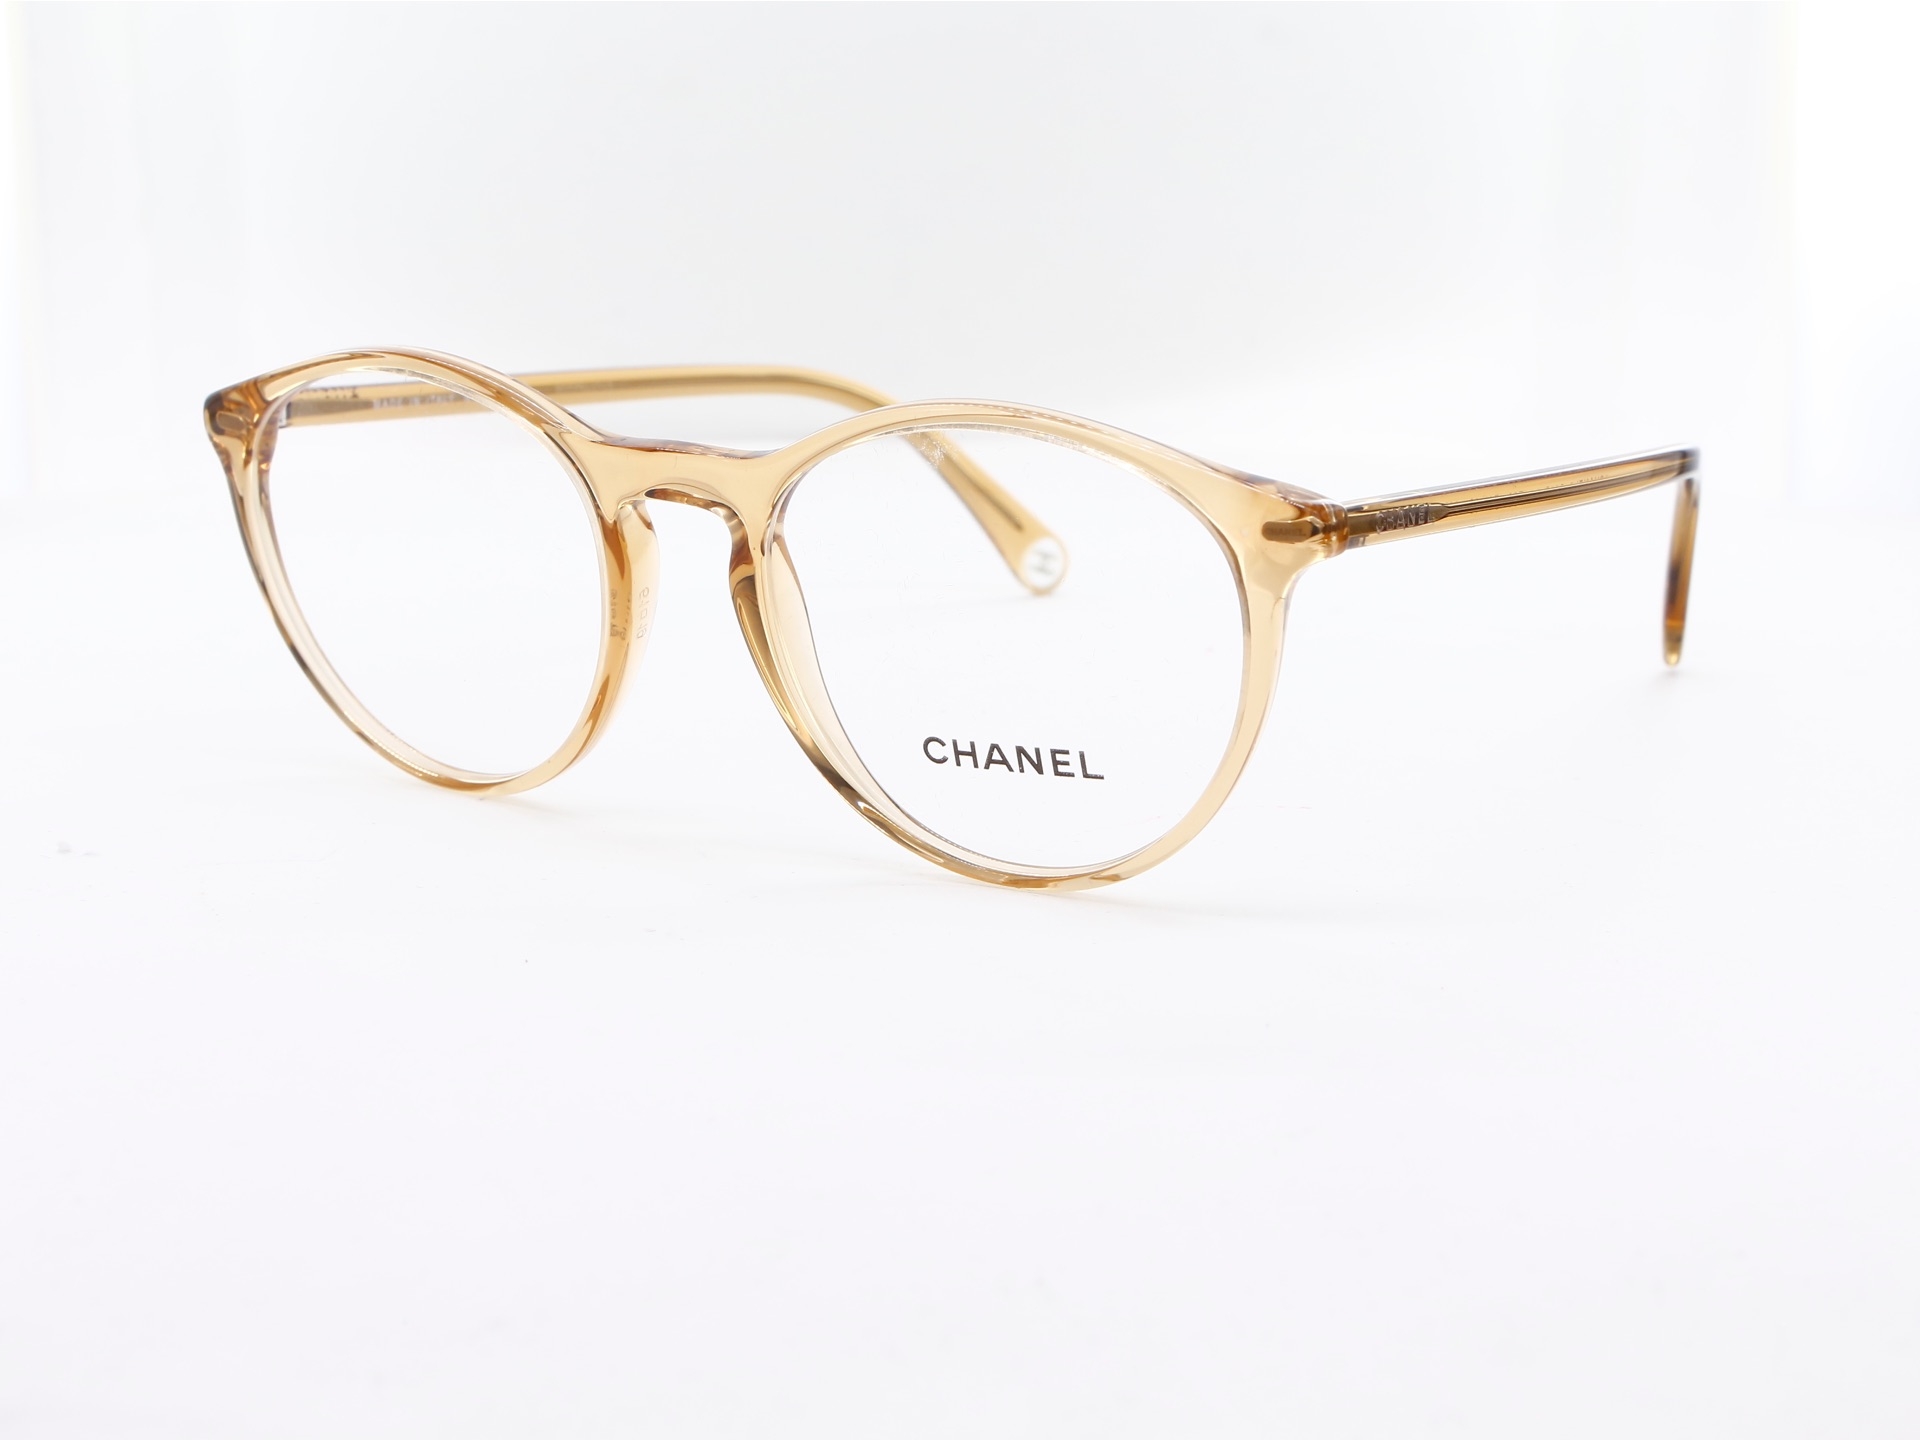 Chanel - ref: 88516